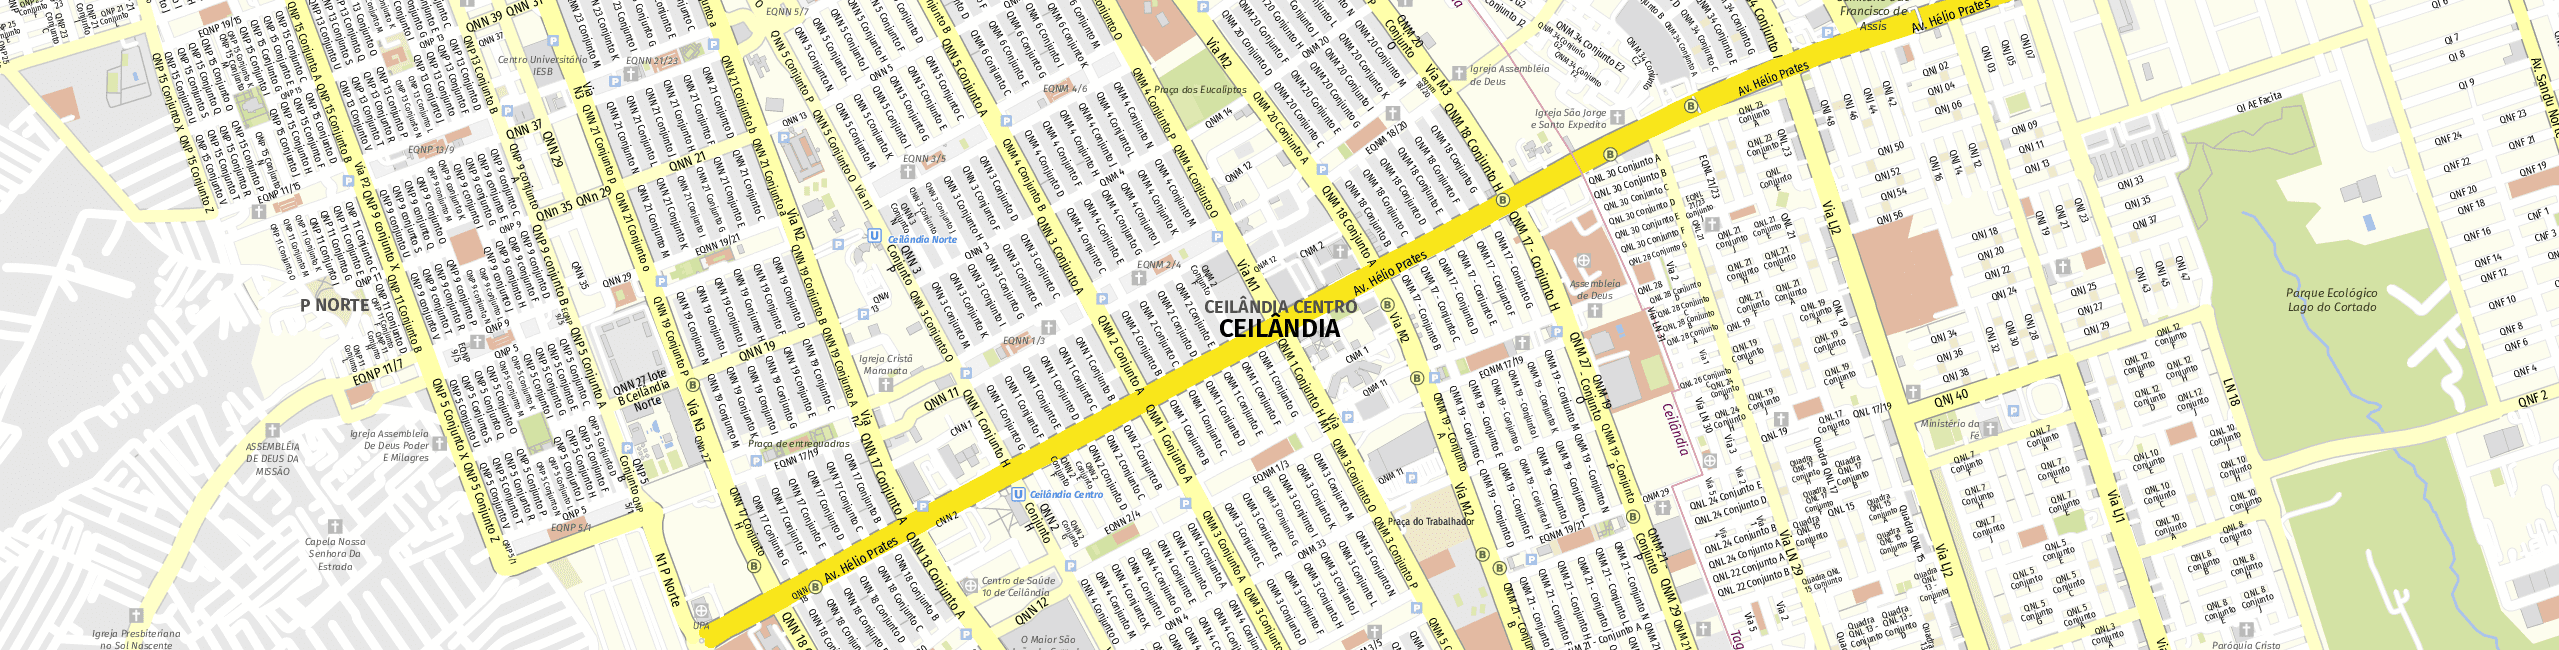 Stadtplan Ceilândia zum Downloaden.